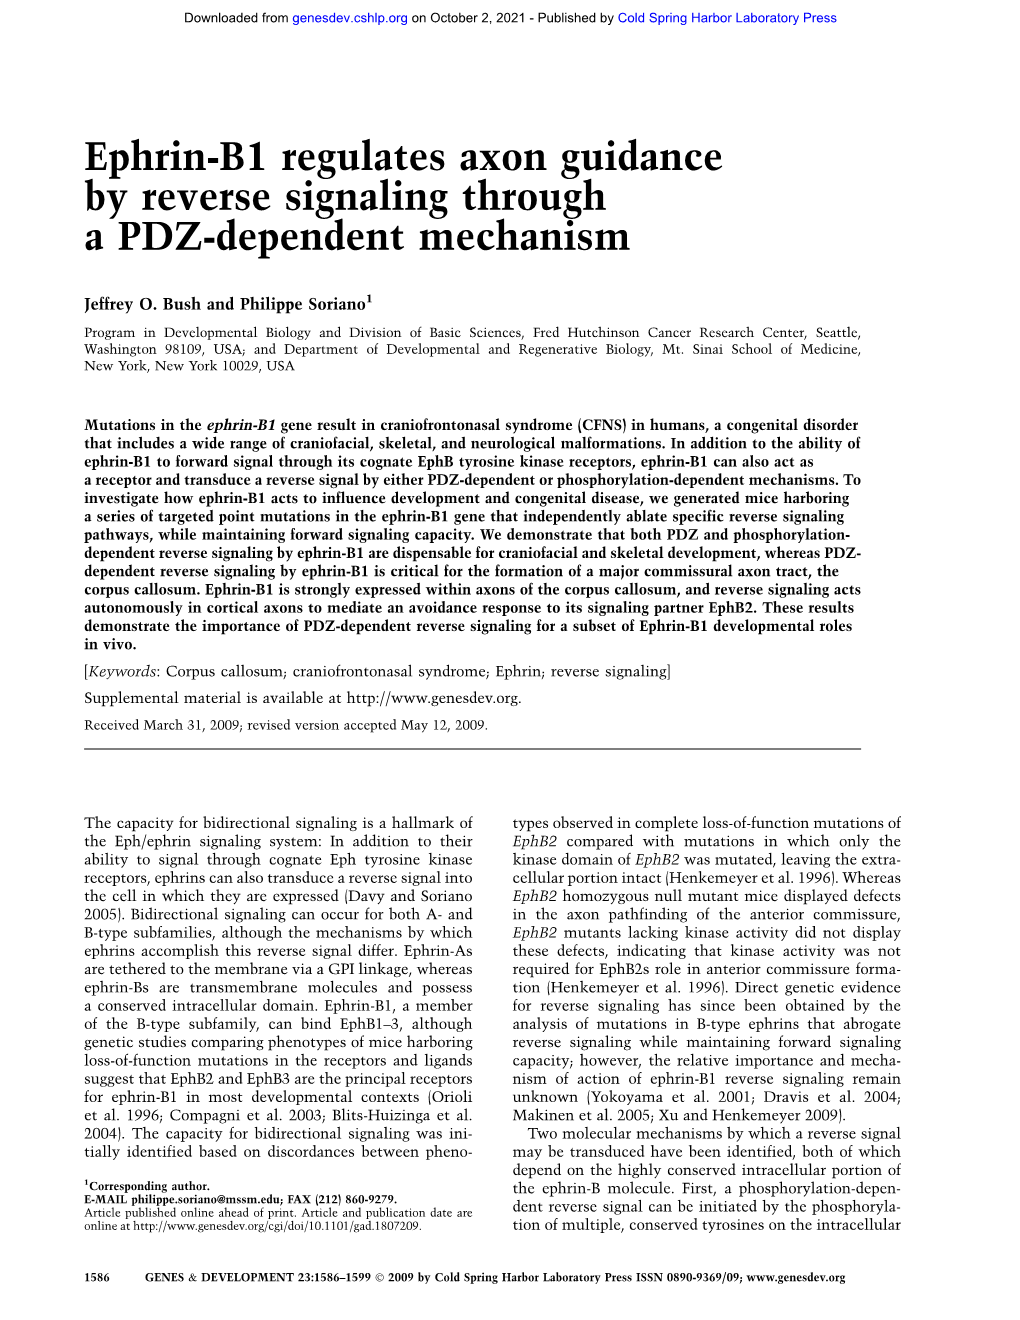 Ephrin-B1 Regulates Axon Guidance by Reverse Signaling Through a PDZ-Dependent Mechanism